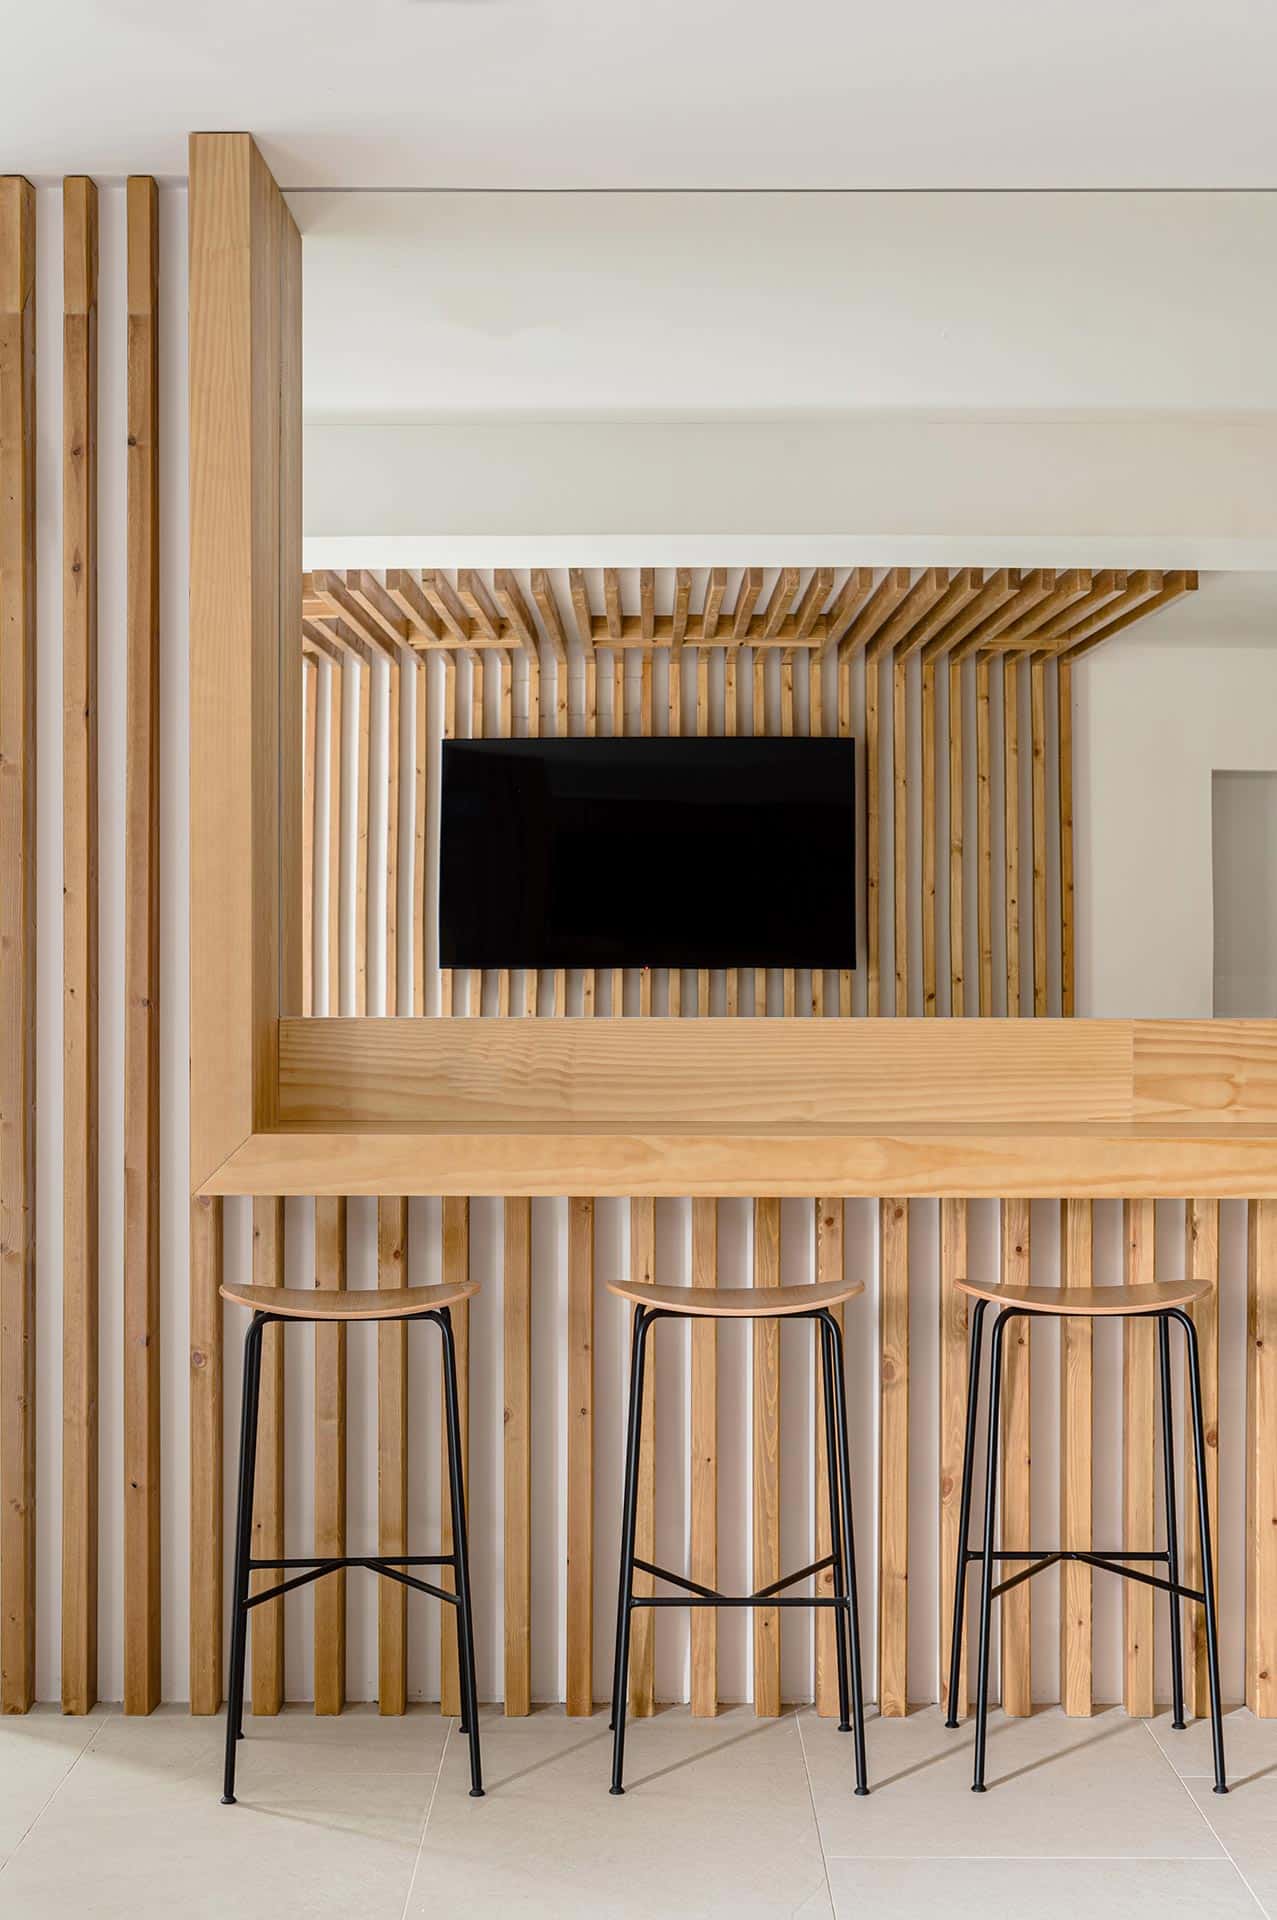 Encimera de madera de albergue Villa Miguela diseñado por Moah Arquitectos en Santander, Cantabria.